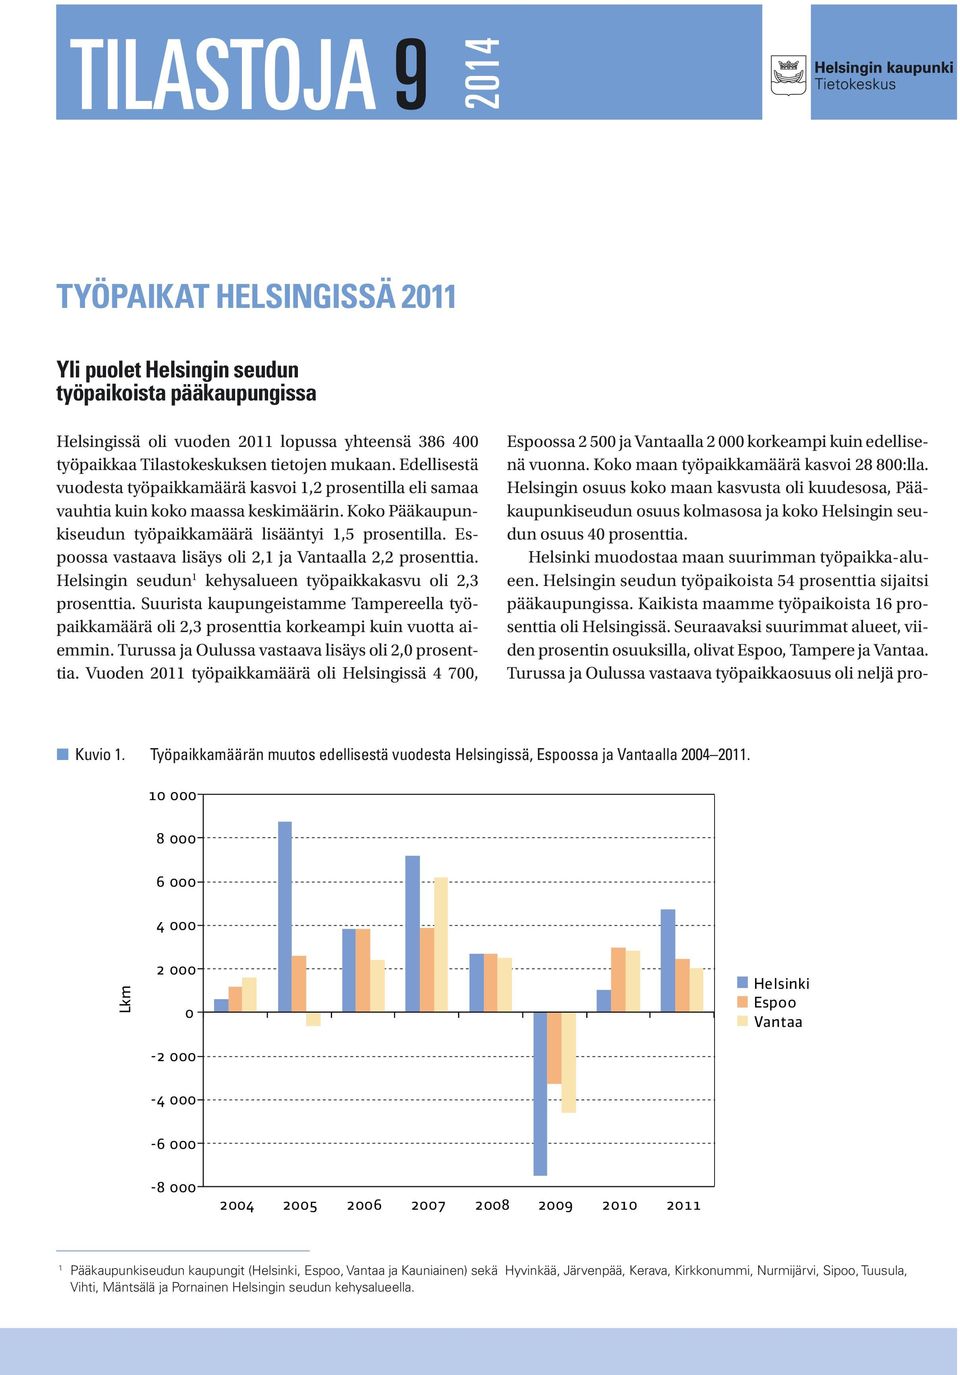 Espoossa vastaava lisäys oli 2,1 ja Vantaalla 2,2 prosenttia. Helsingin seudun 1 kehysalueen työpaikkakasvu oli 2,3 prosenttia.